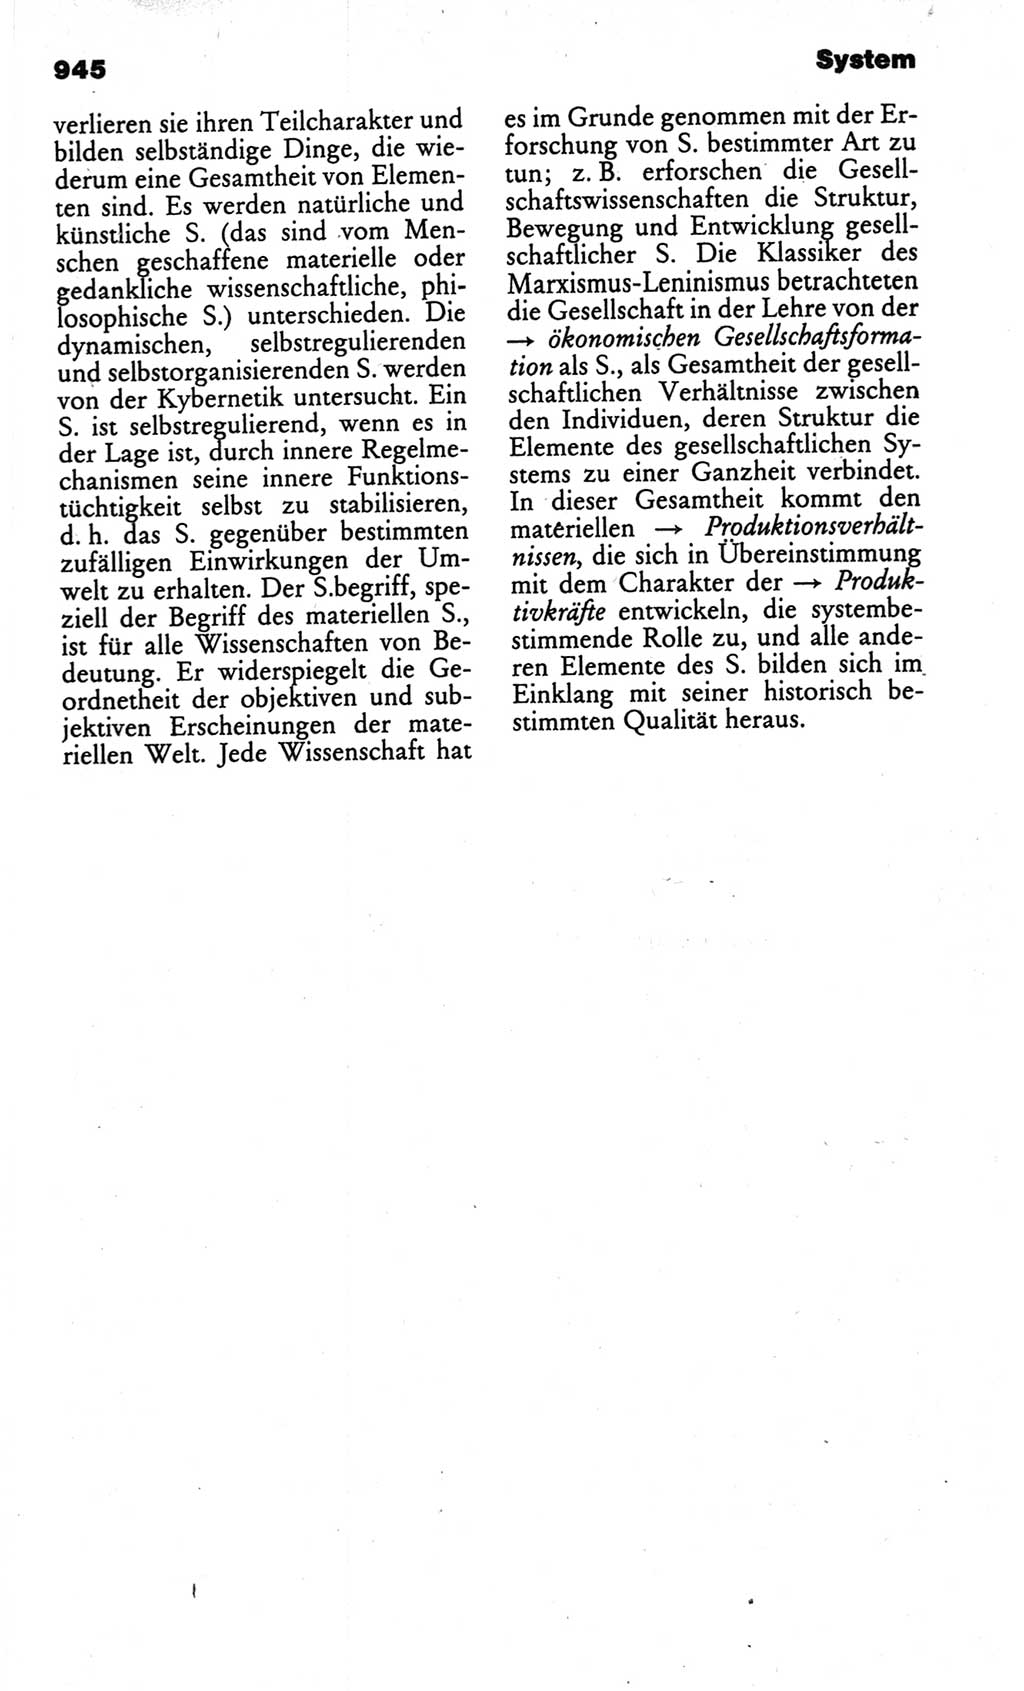 Kleines politisches Wörterbuch [Deutsche Demokratische Republik (DDR)] 1986, Seite 945 (Kl. pol. Wb. DDR 1986, S. 945)